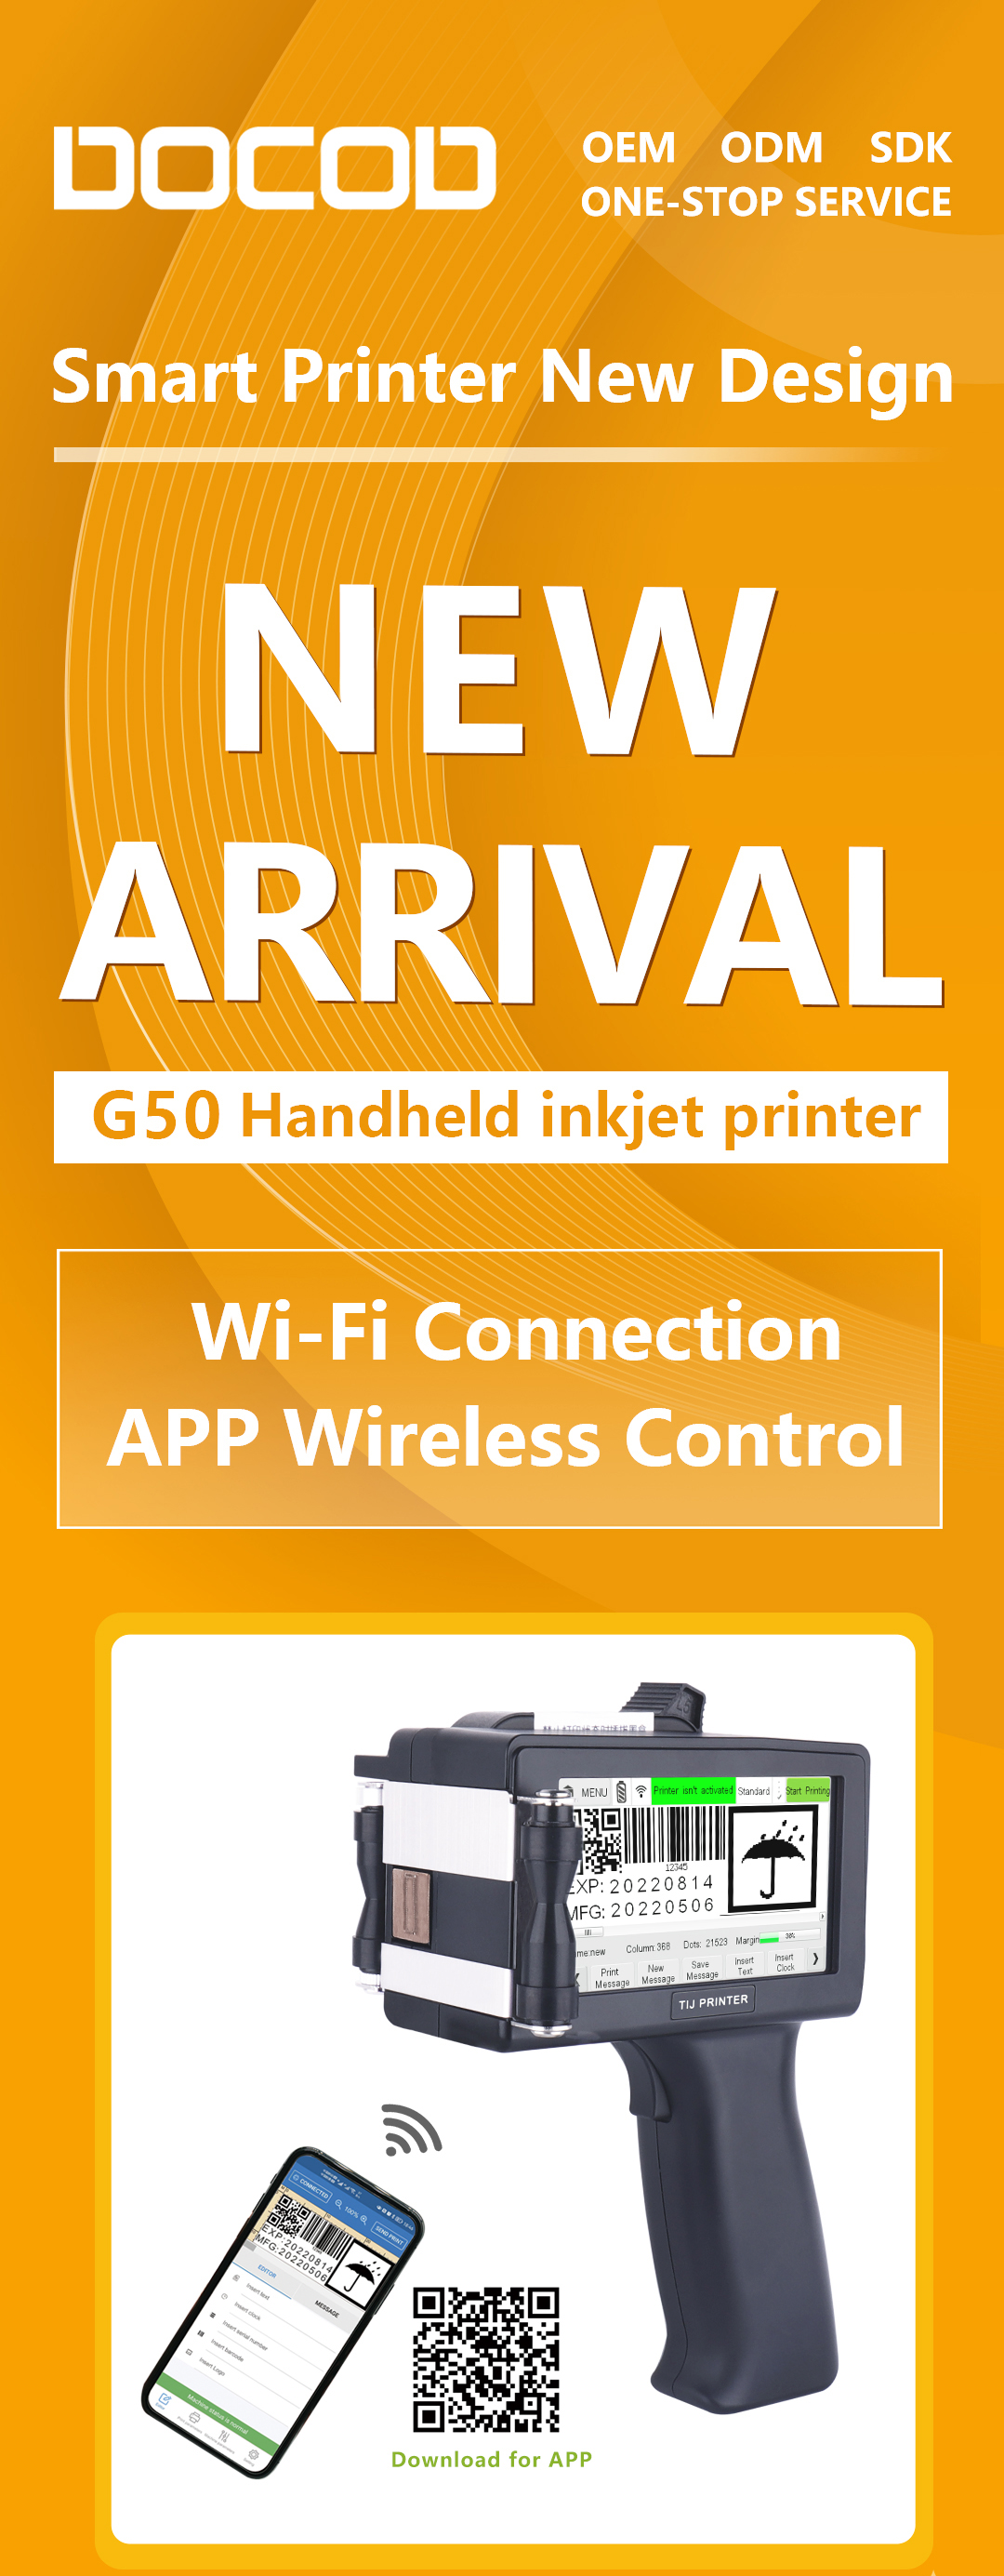 New Arrival G50 Handheld Inkjet Printer